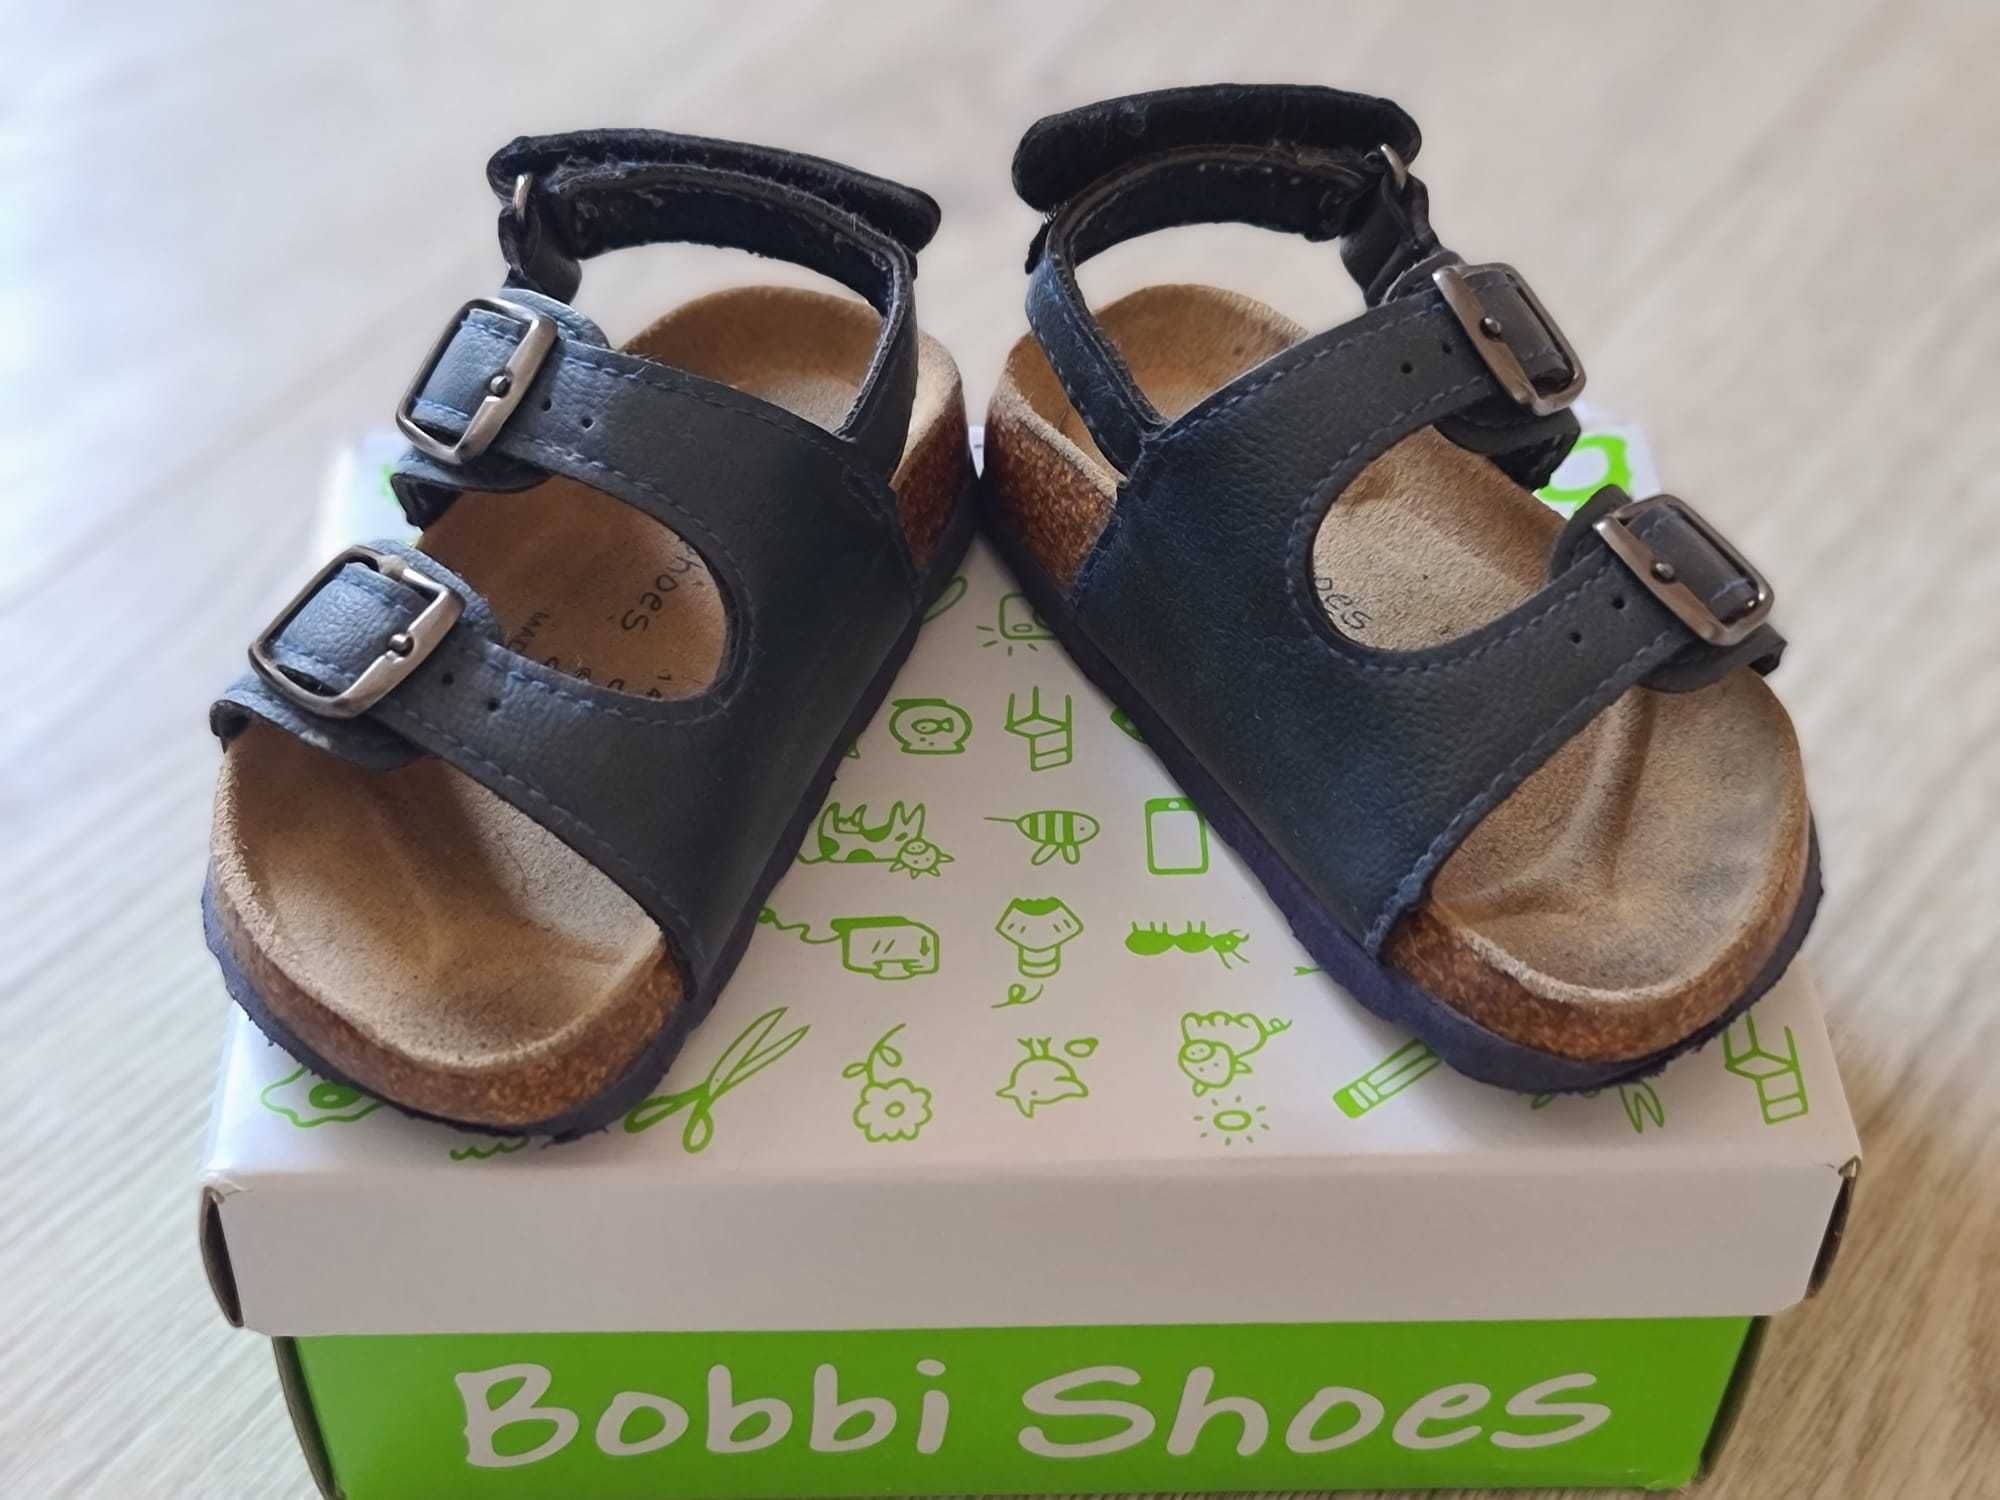 Sandale din piele Bobbi Shoes pentru bebelusi, nr. 21